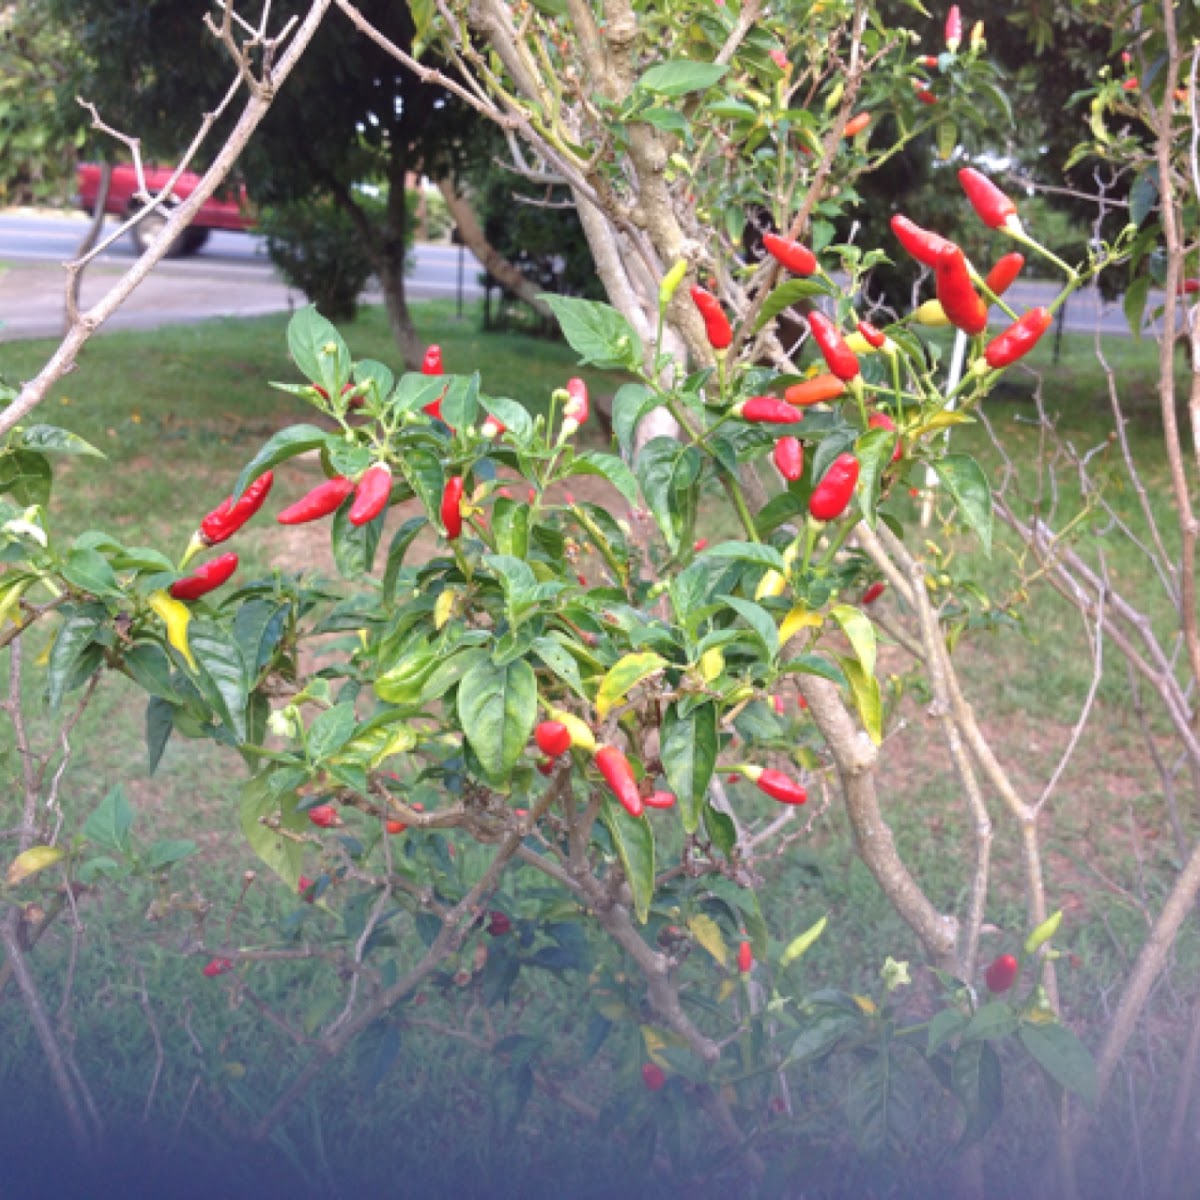 Chili Pepper Plant